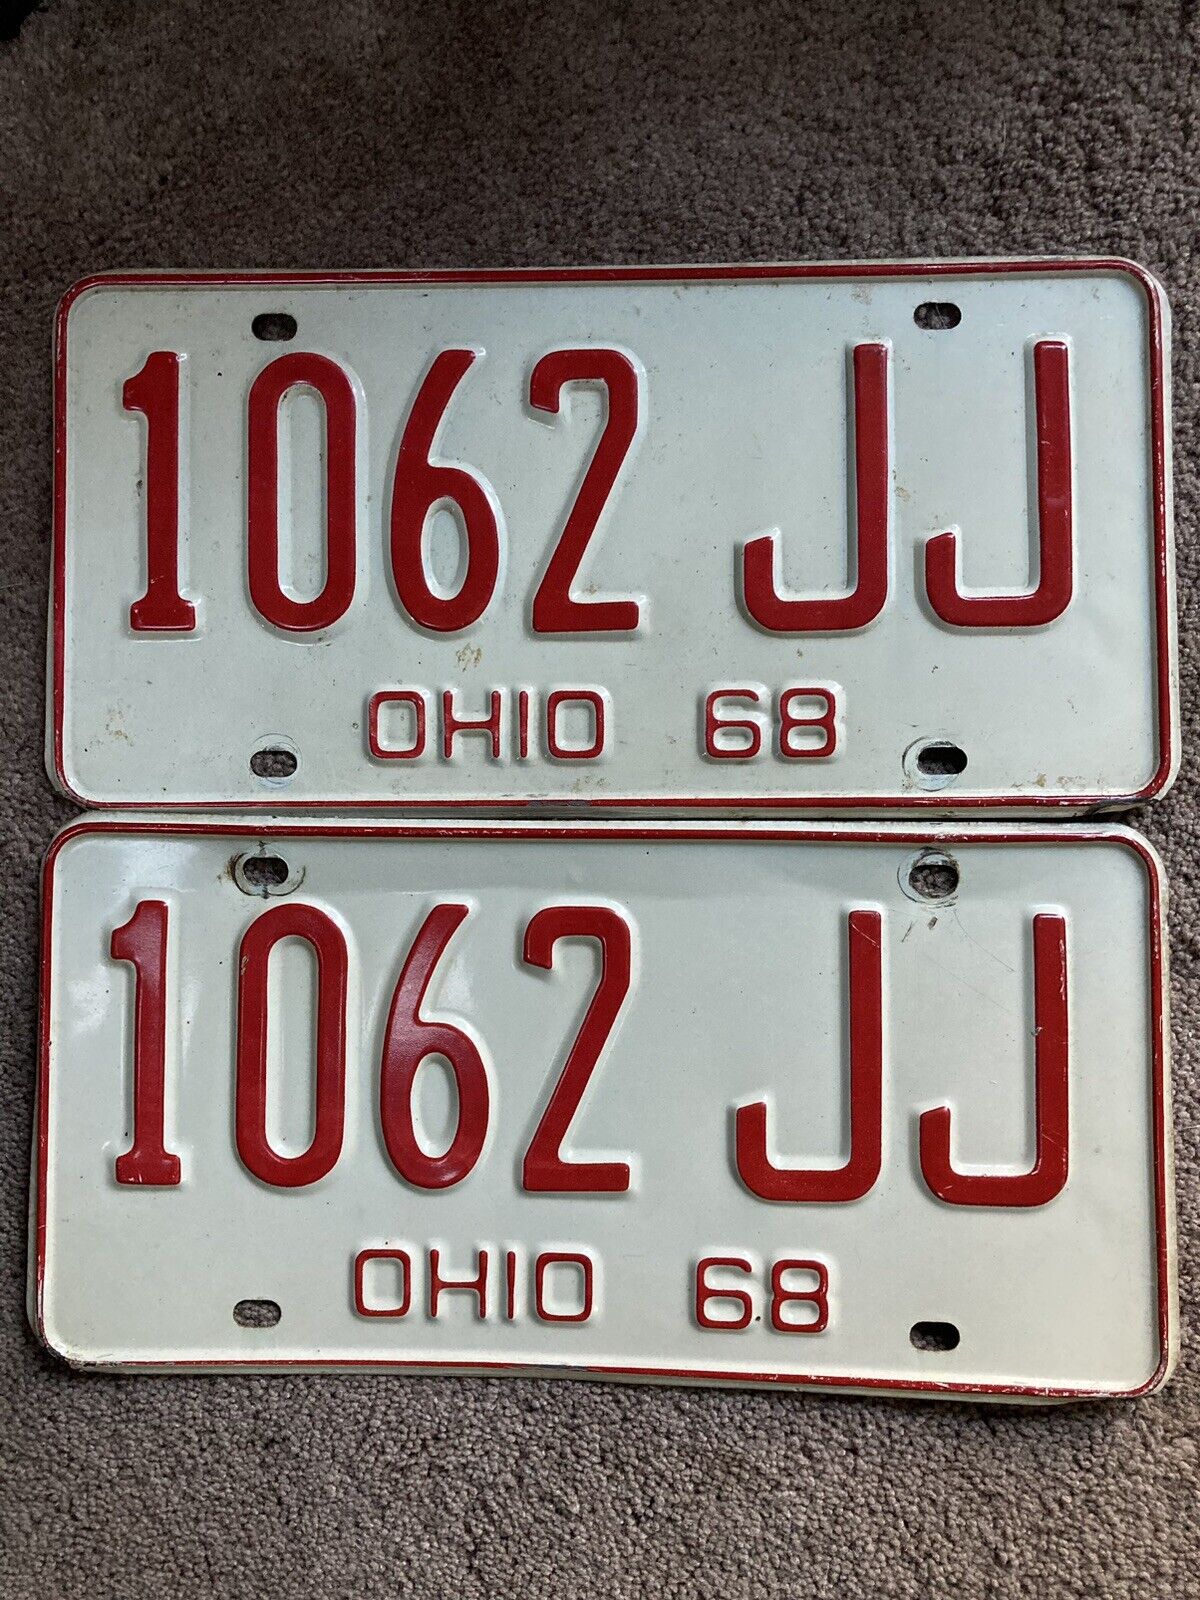 Pair of 1968 Ohio License Plates - 1062 JJ  - Very Nice